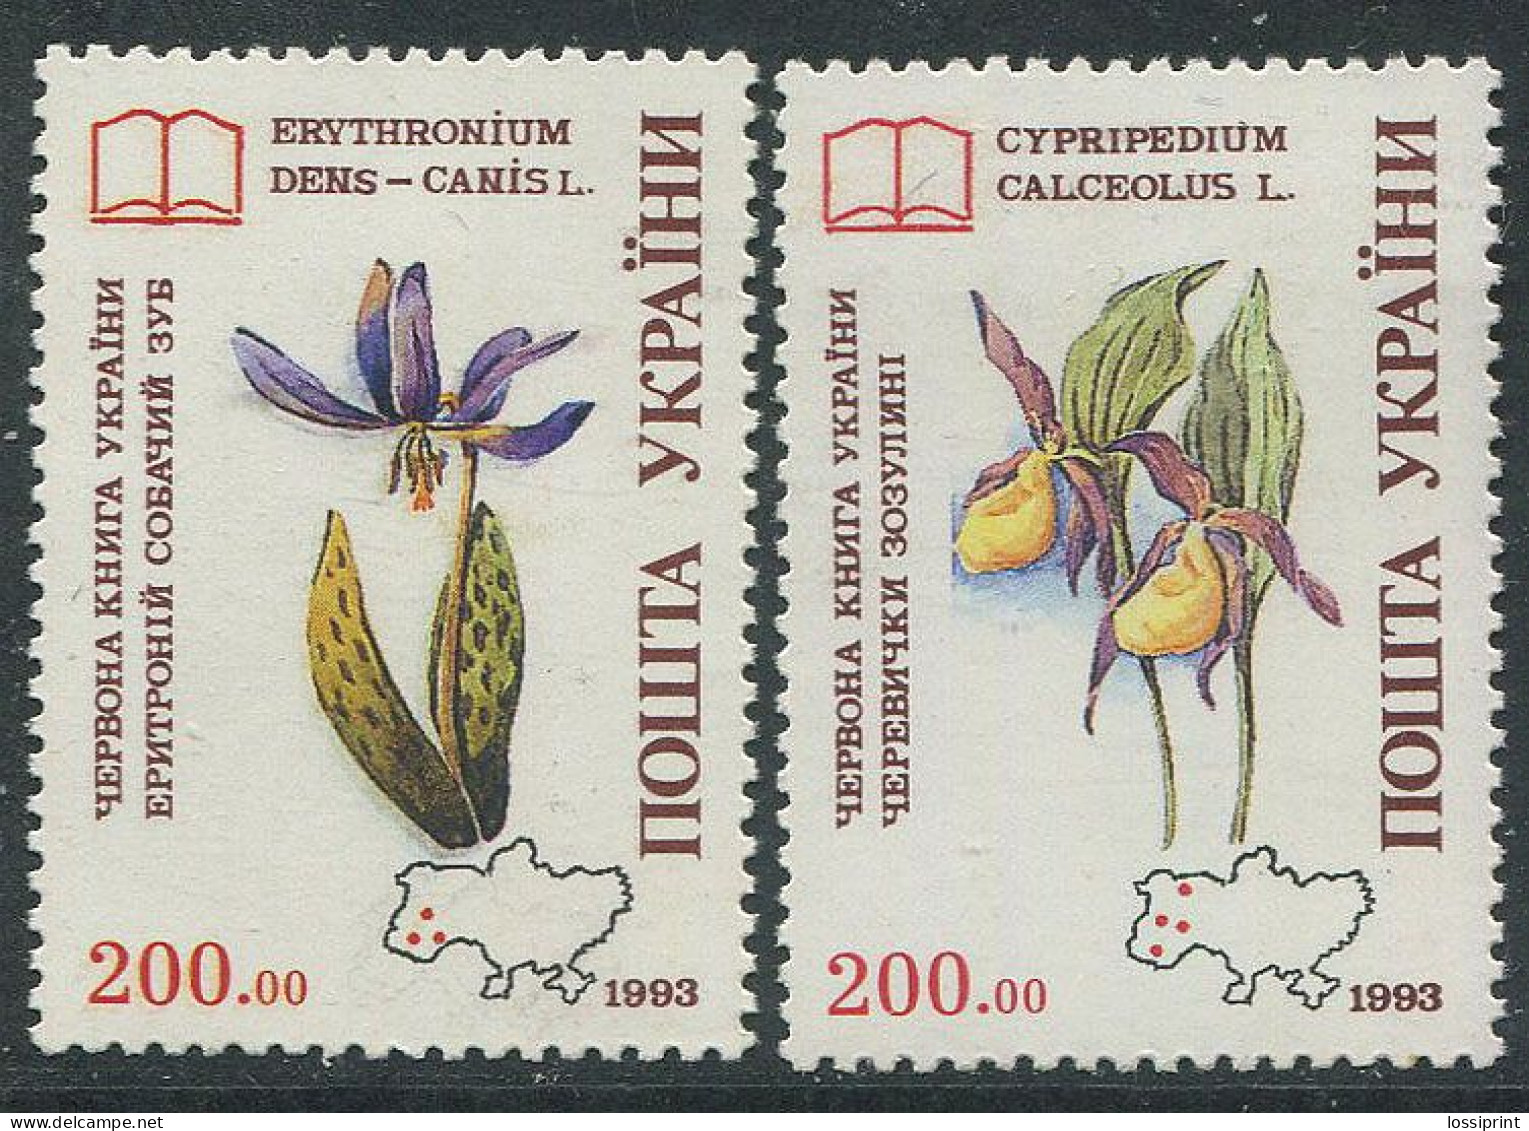 Ukraine:Ukraina:Unused Stamps Flowers, 1993, MNH - Ukraine